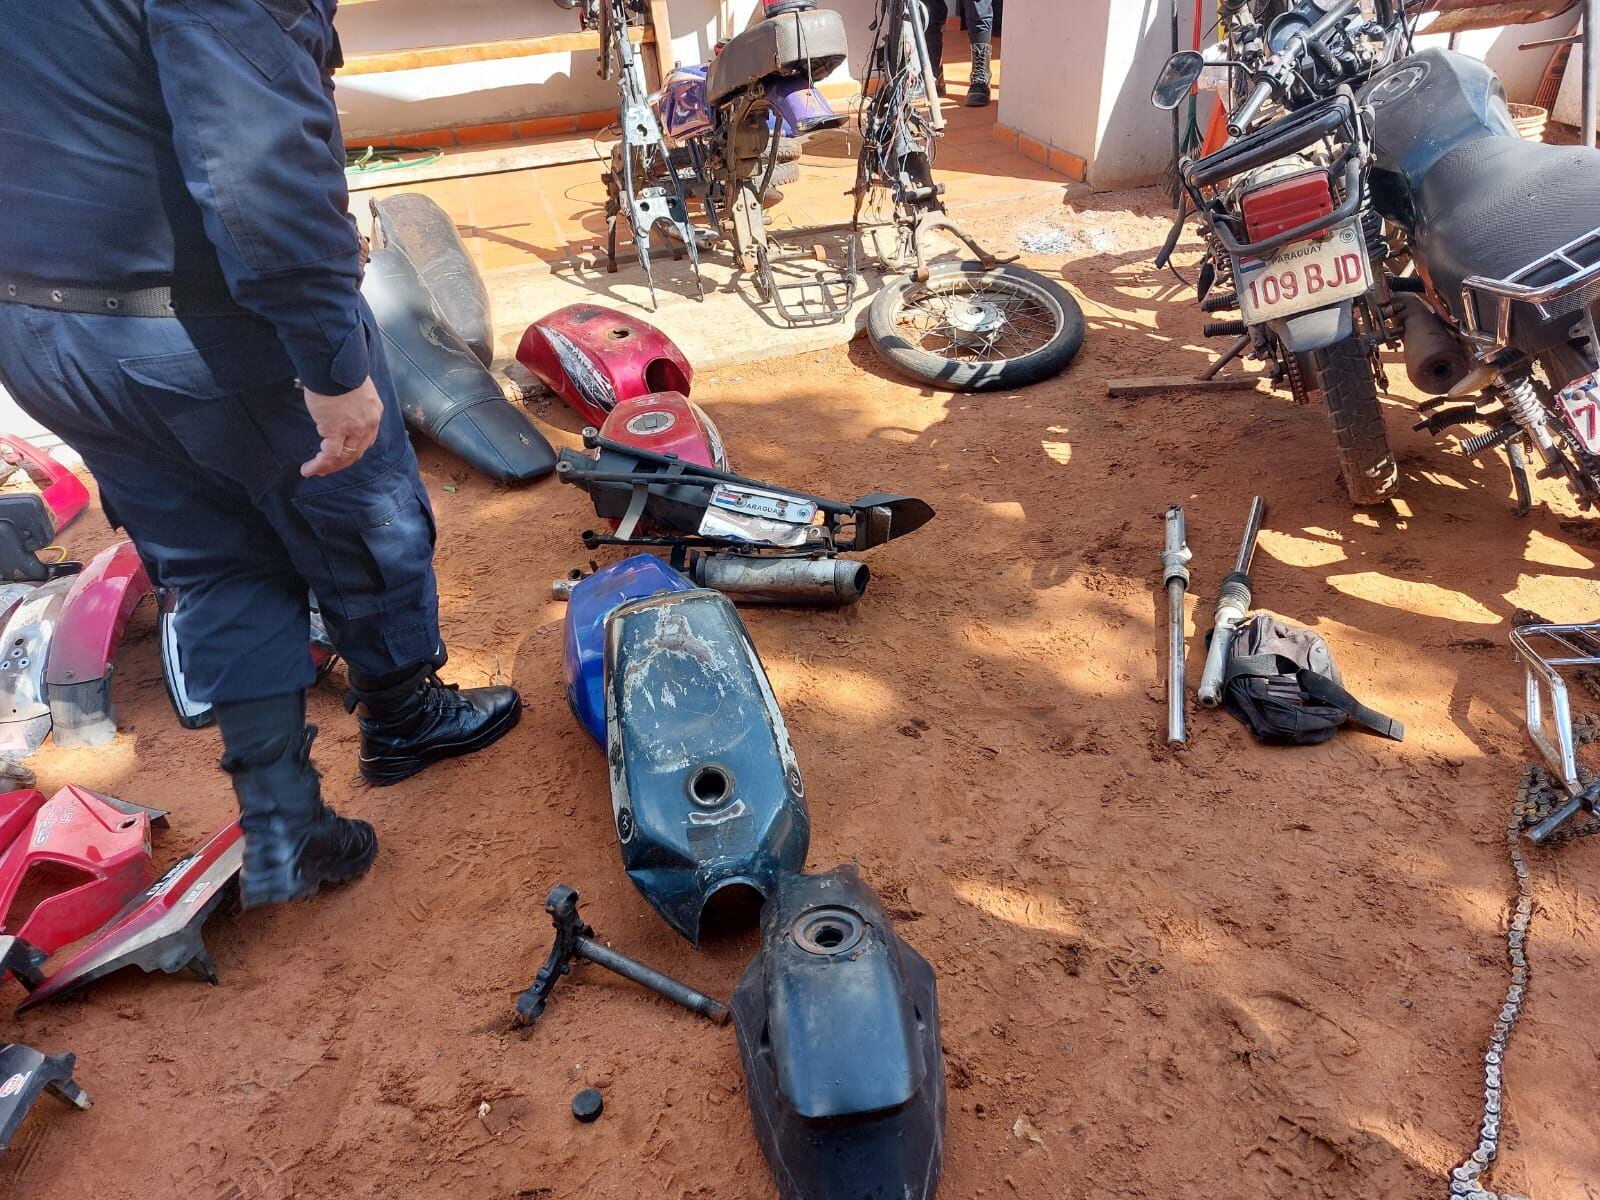 Partes de motocicletas encontradas en el sitio.